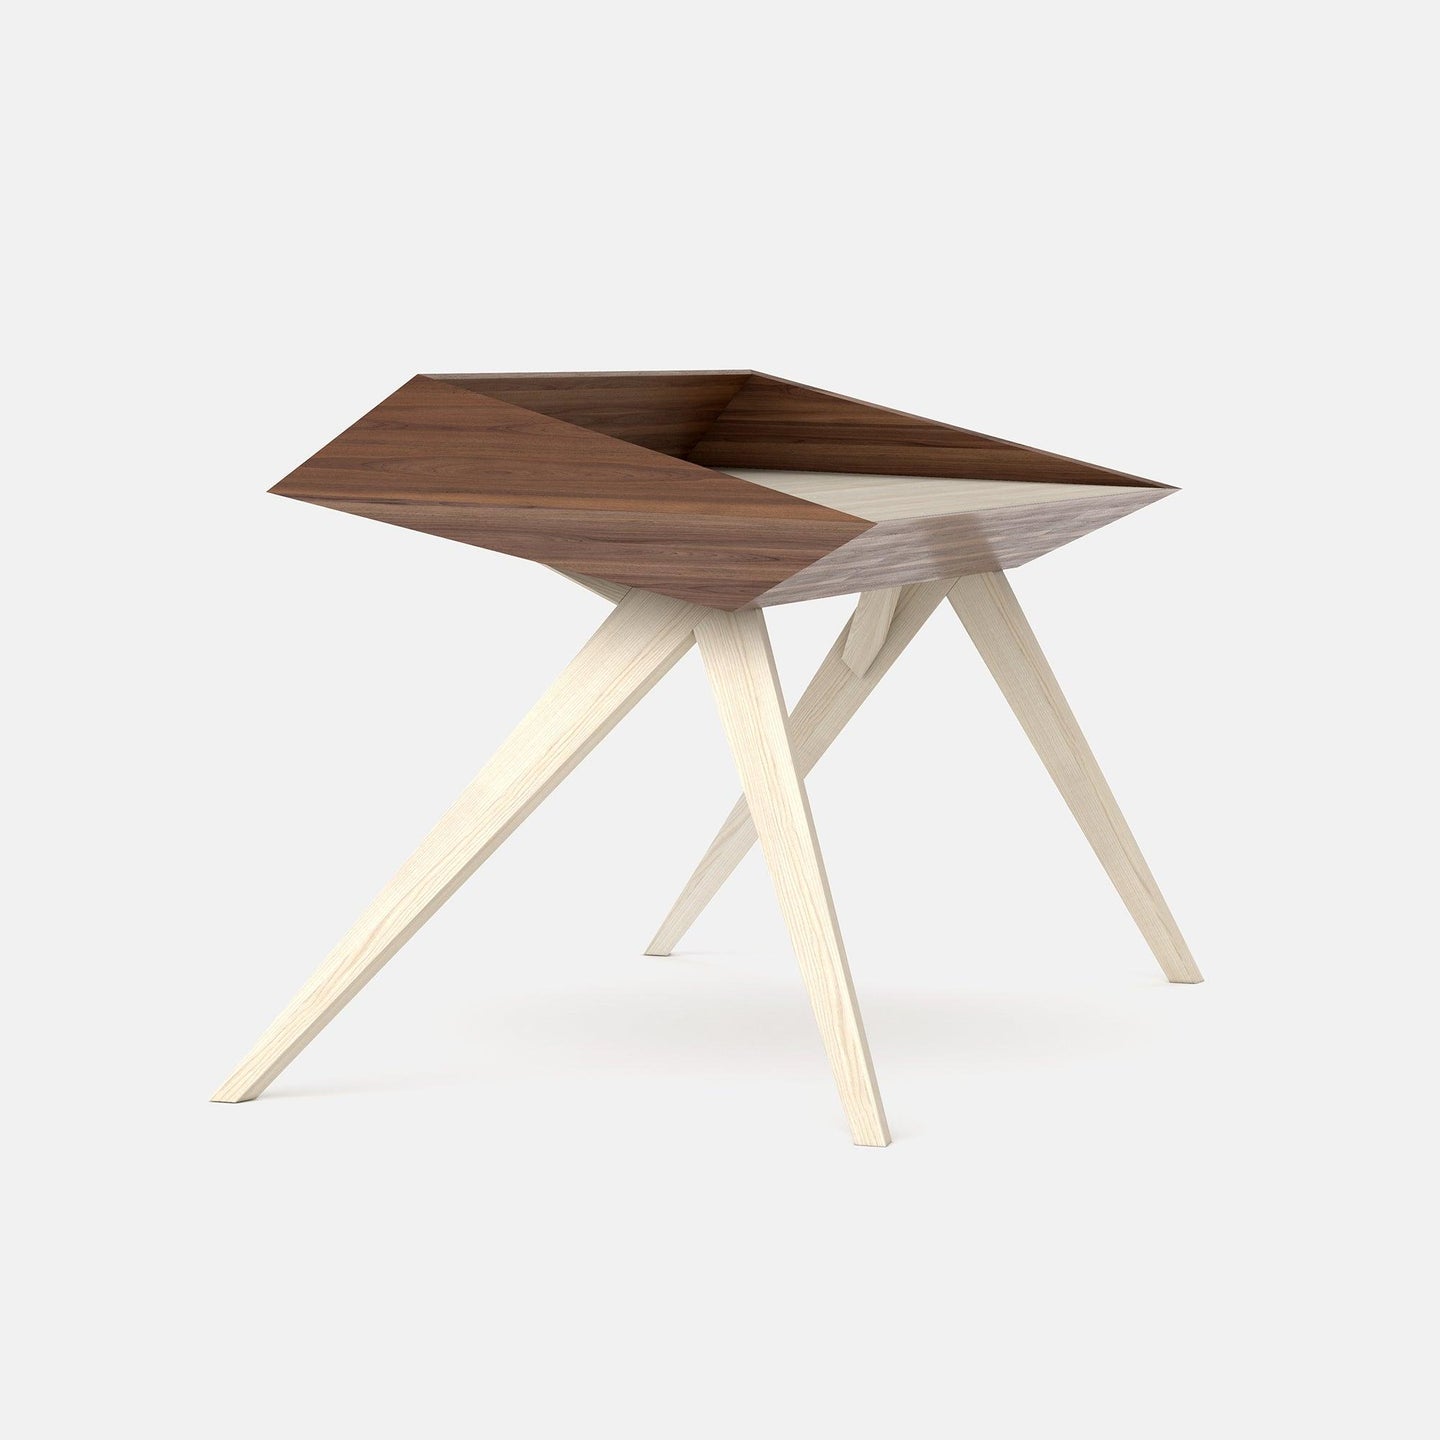 WoW Desk | Luxury Wood Desk - AROUNDtheTREE